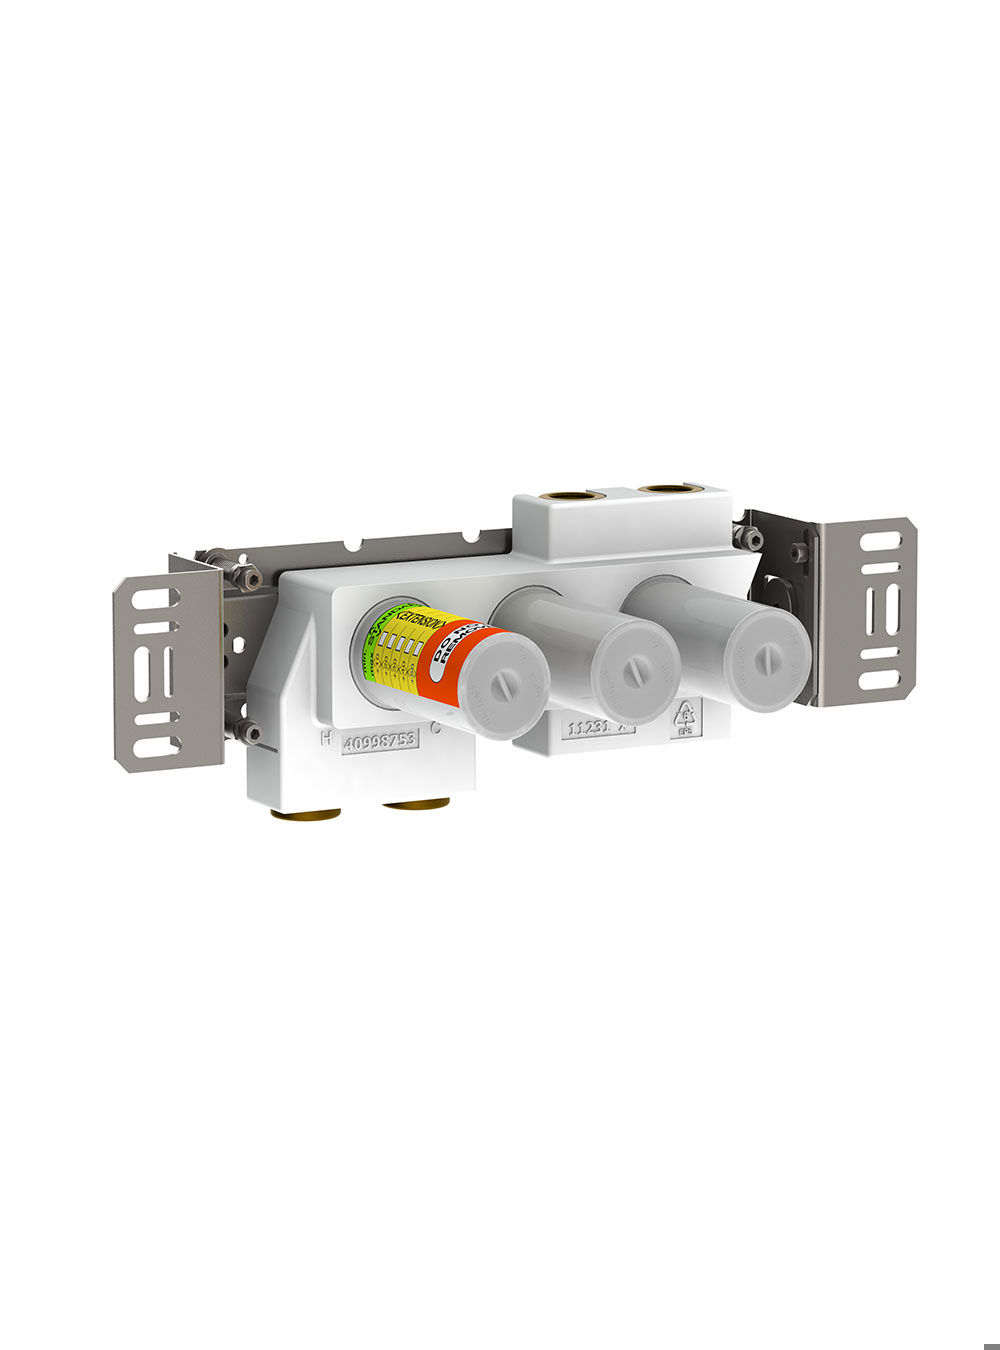 5400VA4: 4-vägs termostatblandare.
¾" anslutning för CU-, stål- eller pexrör. 